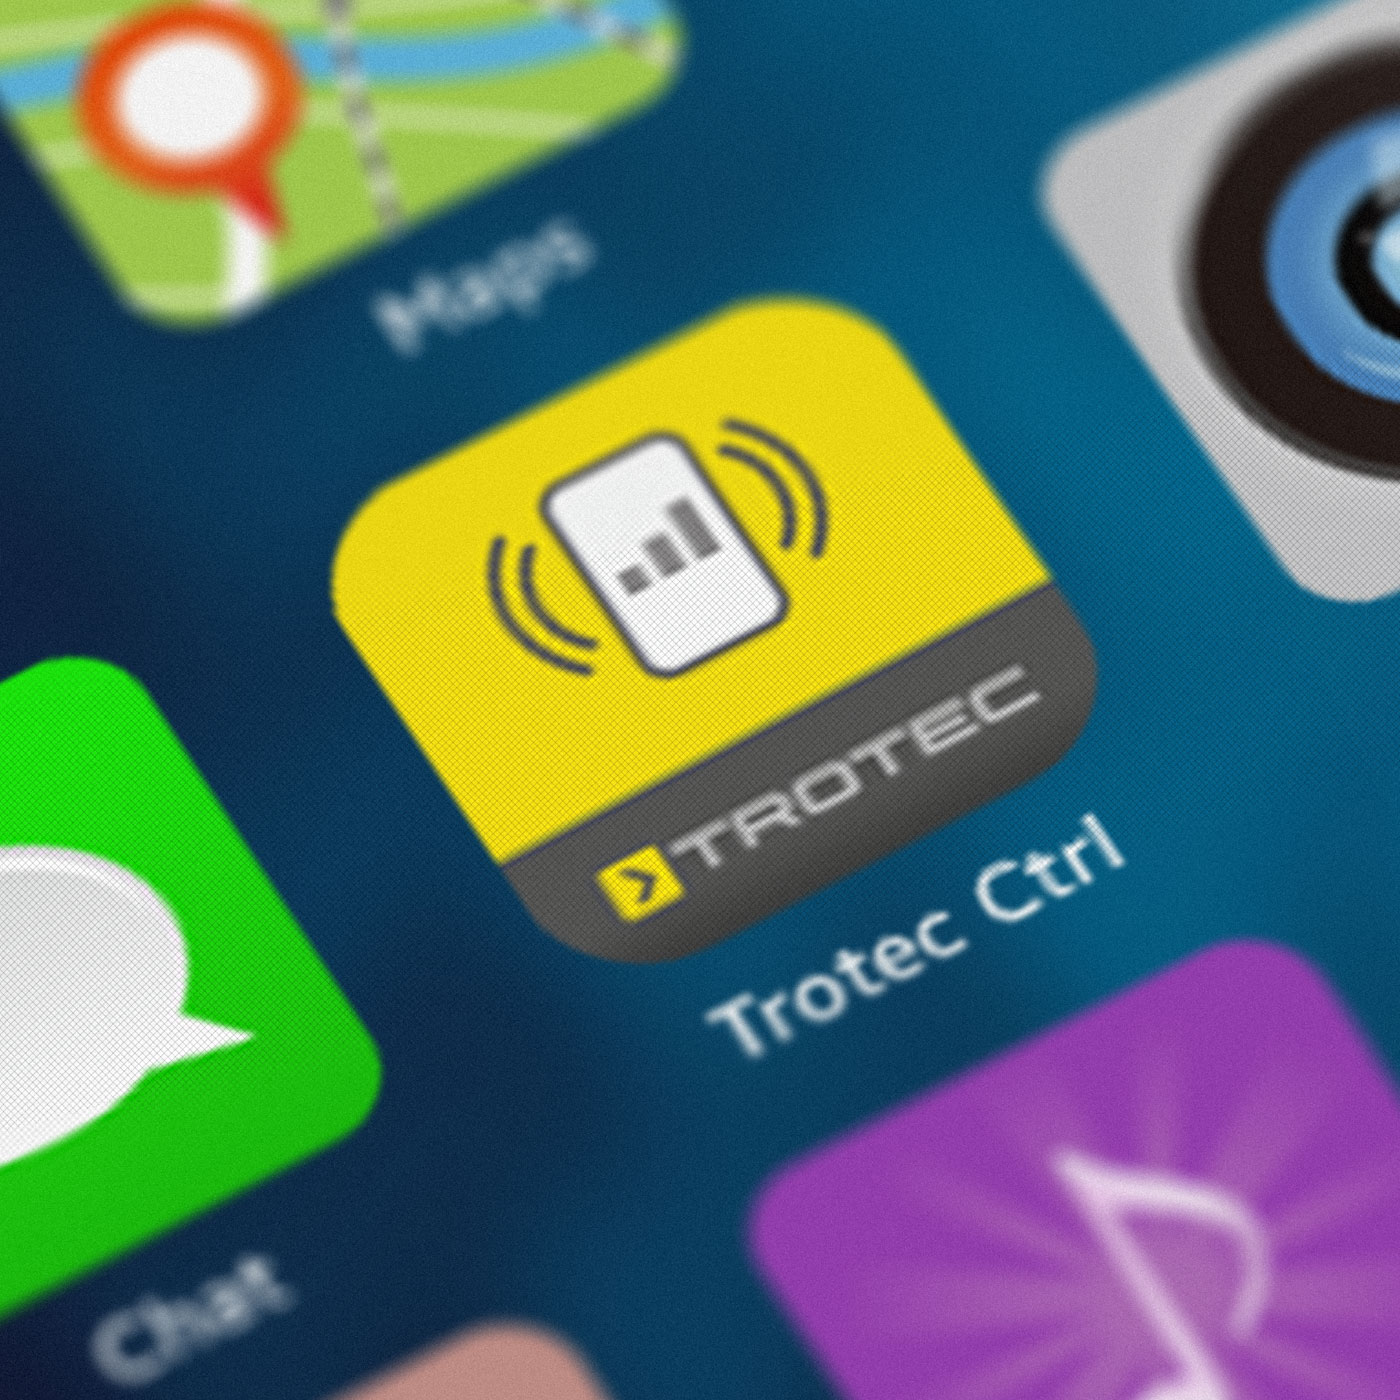 Aplikacja Trotec-Control jest dostępna bezpłatnie dla systemów Android oraz iOS